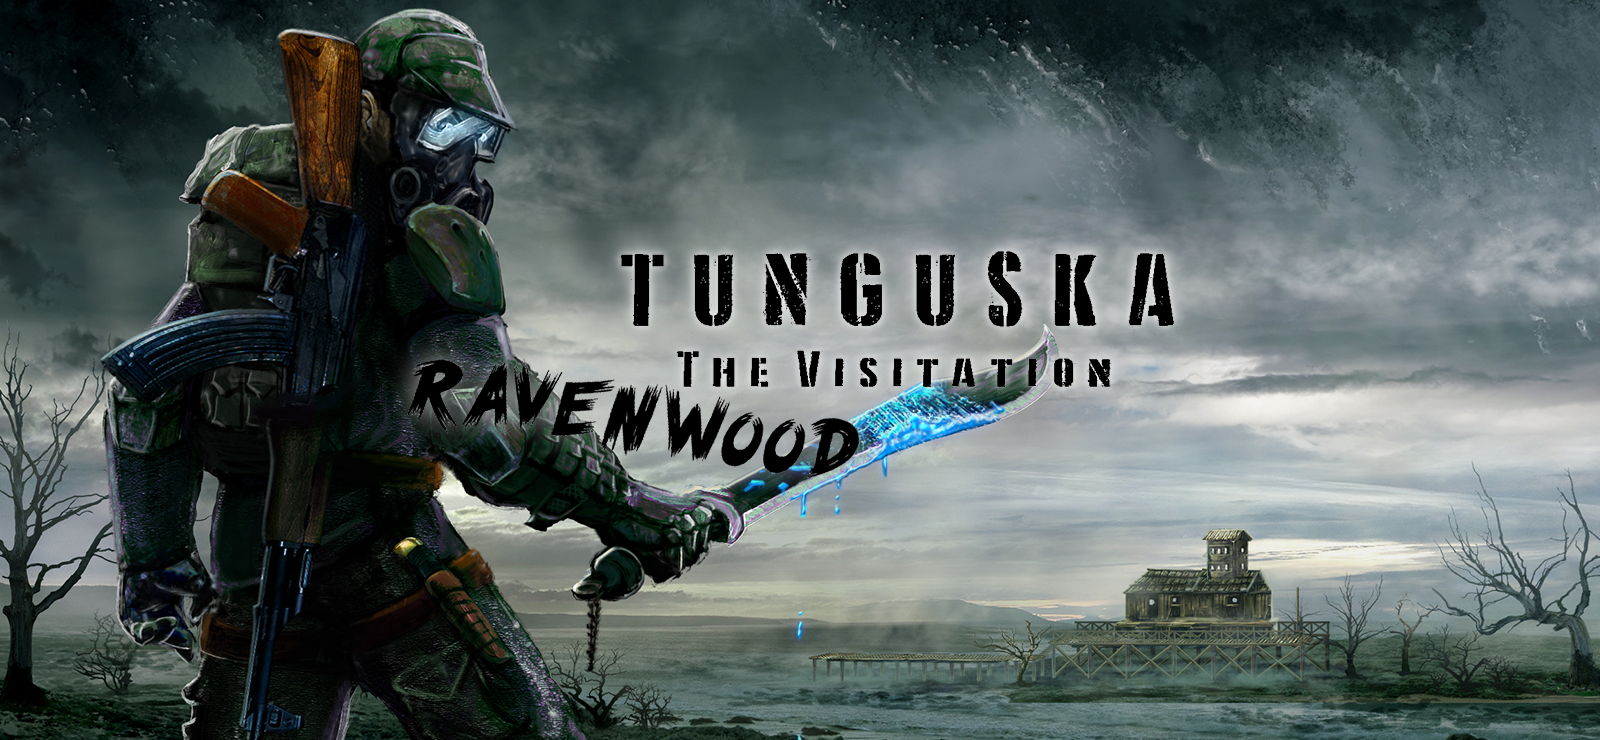 Tunguska: The Visitation - Ravenwood Stories